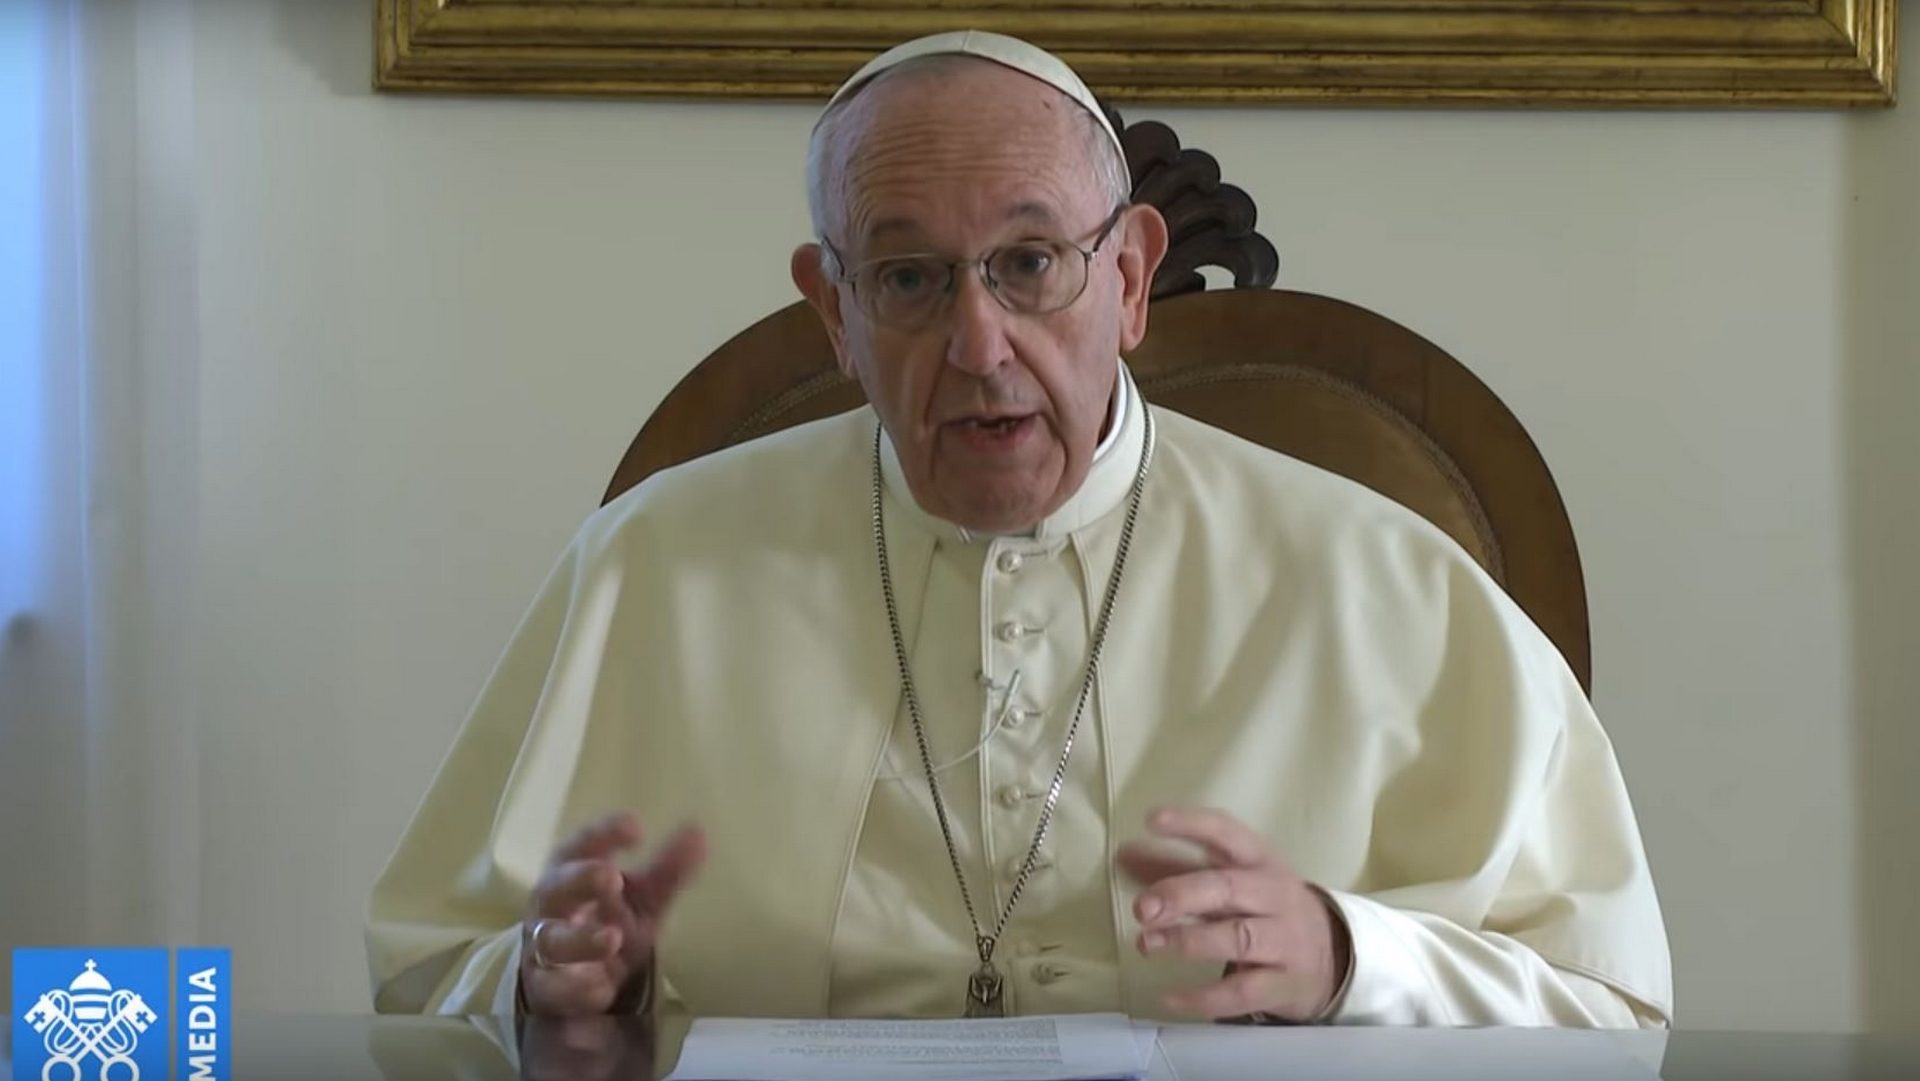 Le pape François pour l'accueil généreux des personnes victimes de la traite humain | capture d'écran / Vatican Media